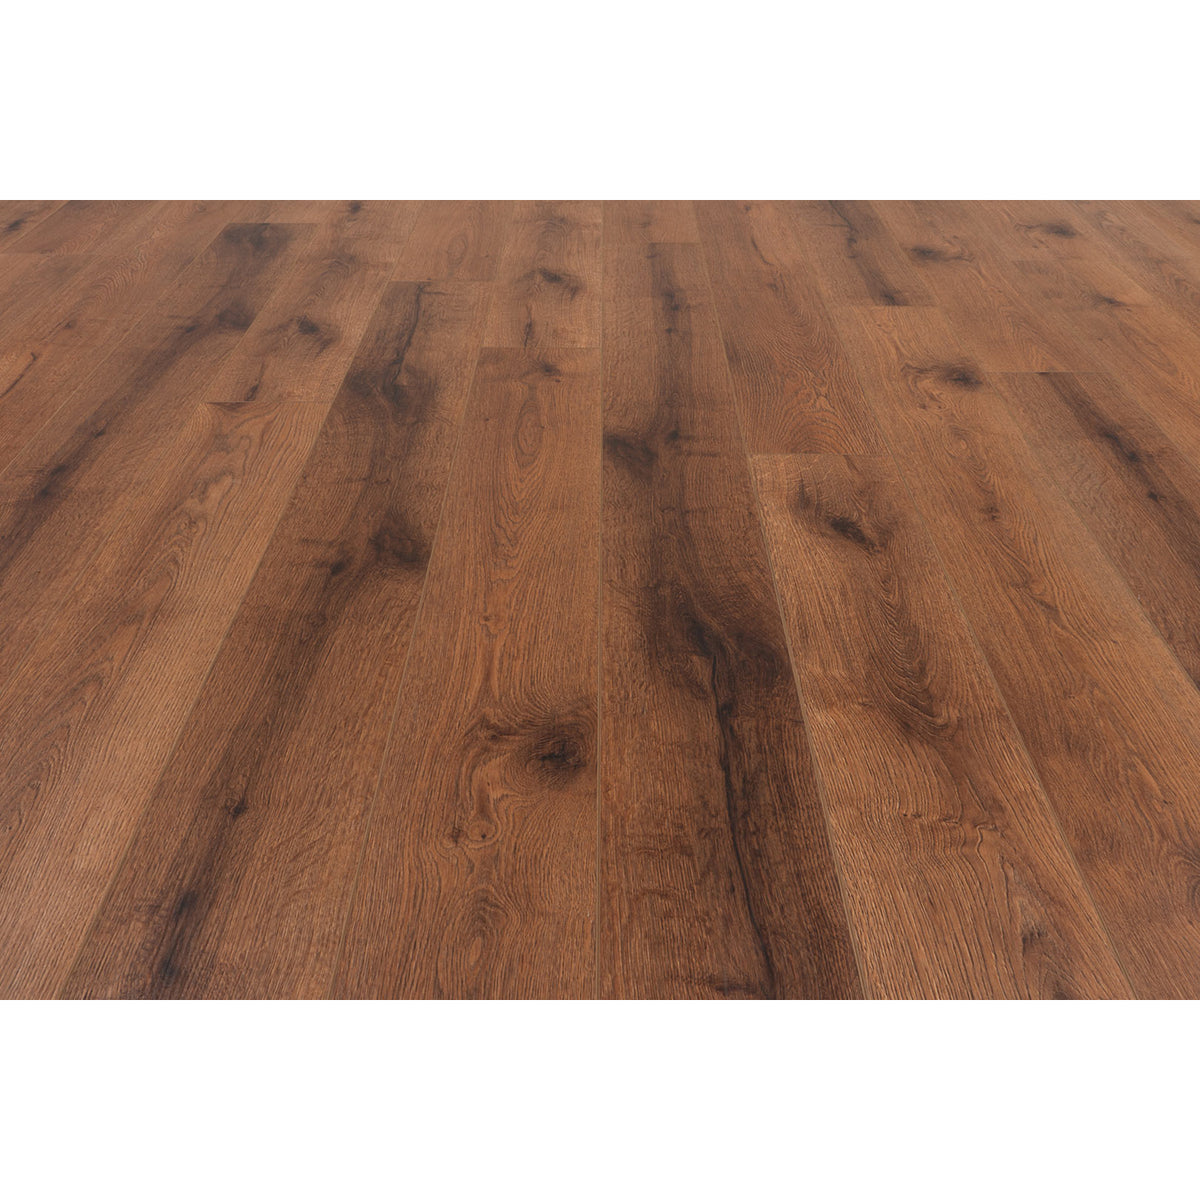 Provenza Floors - Concorde Oak Luxury Vinyl Plank - Smoked Amber